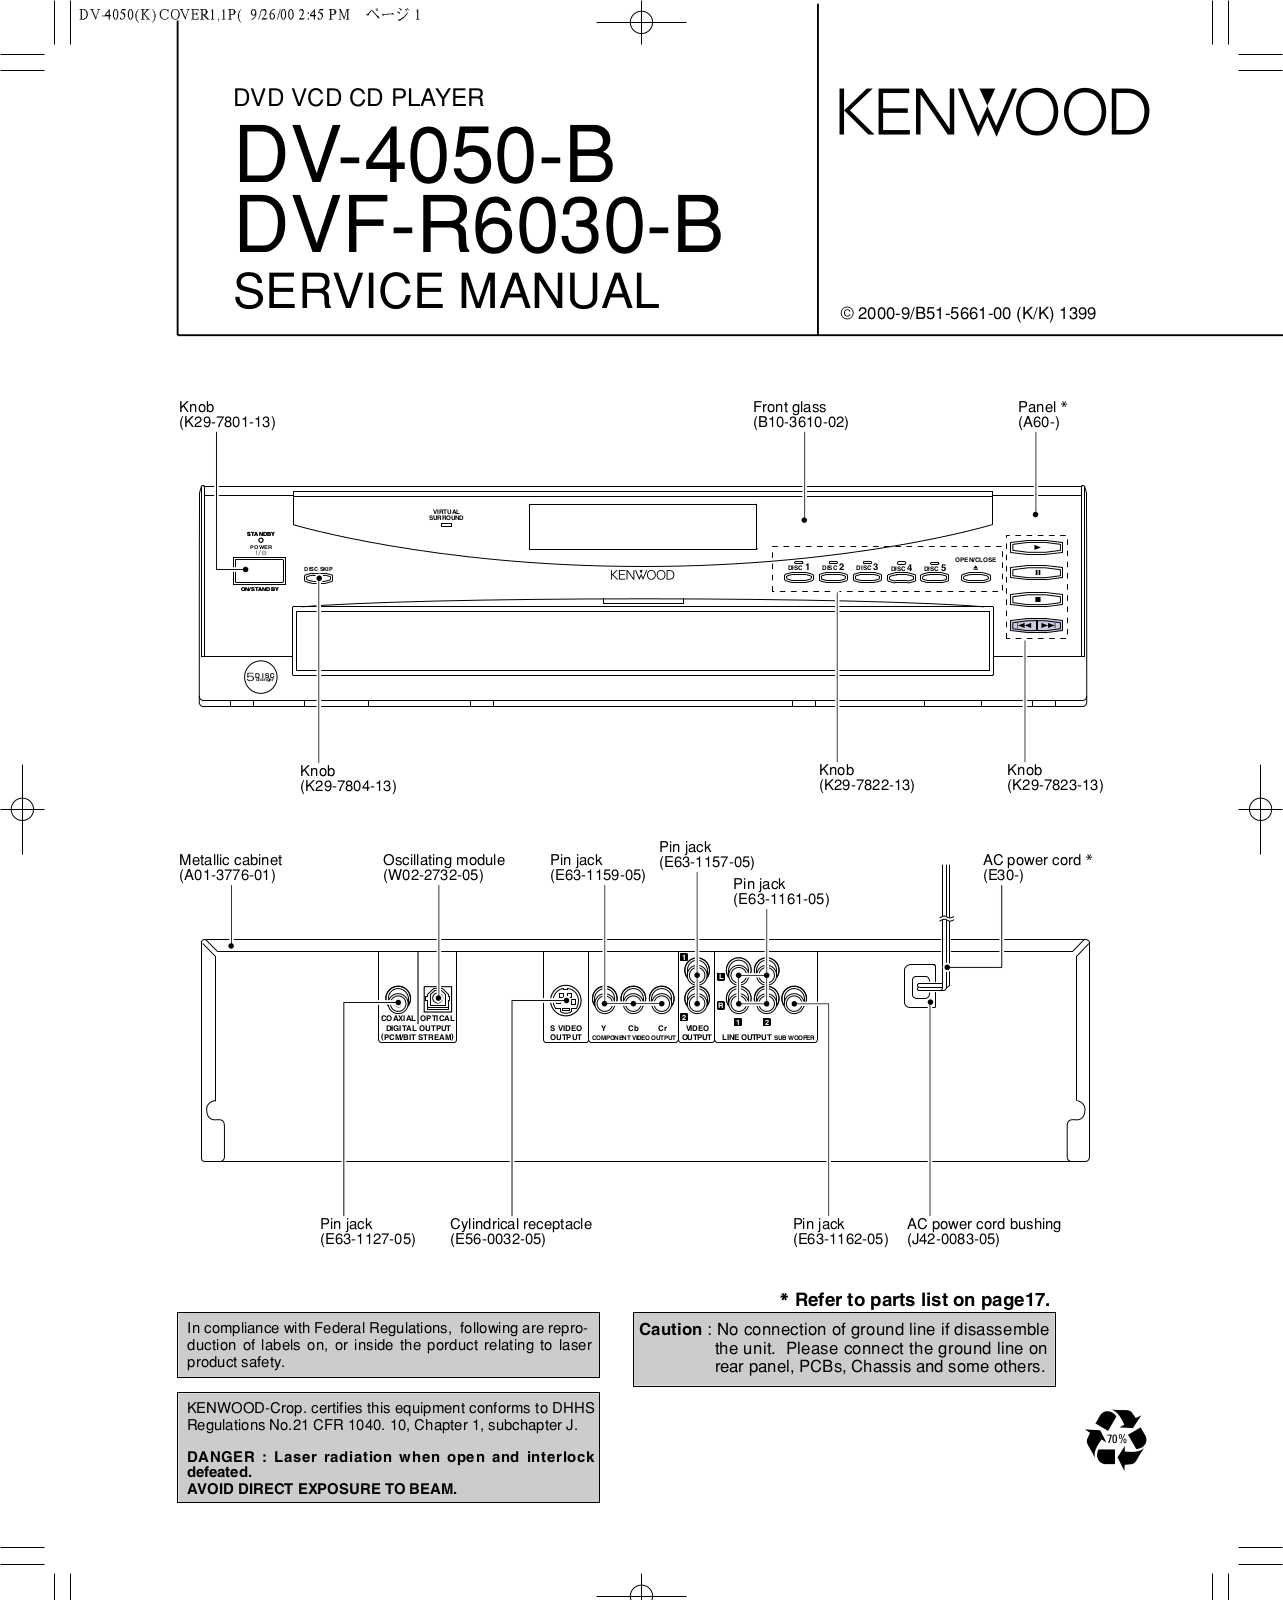 Kenwood DV-4050 Schematic